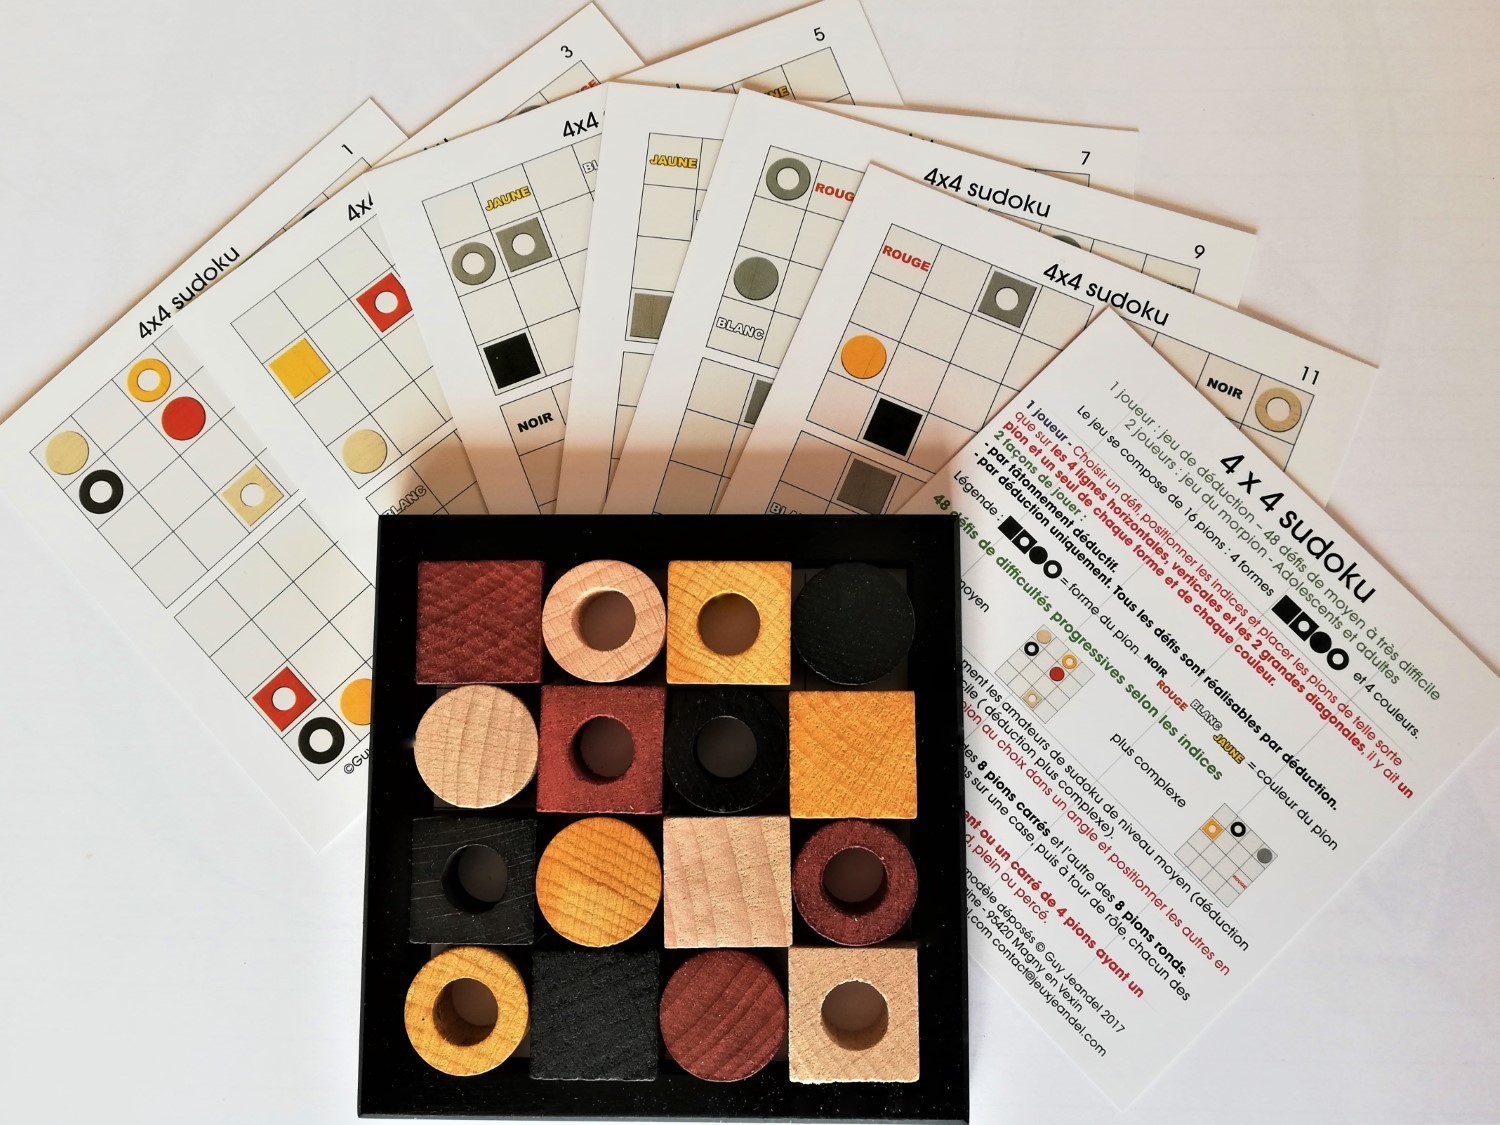 jeu casse-tête 4X4 Sudoku en bois - CASSE-TÊTE - BOUTIQUE JOUET